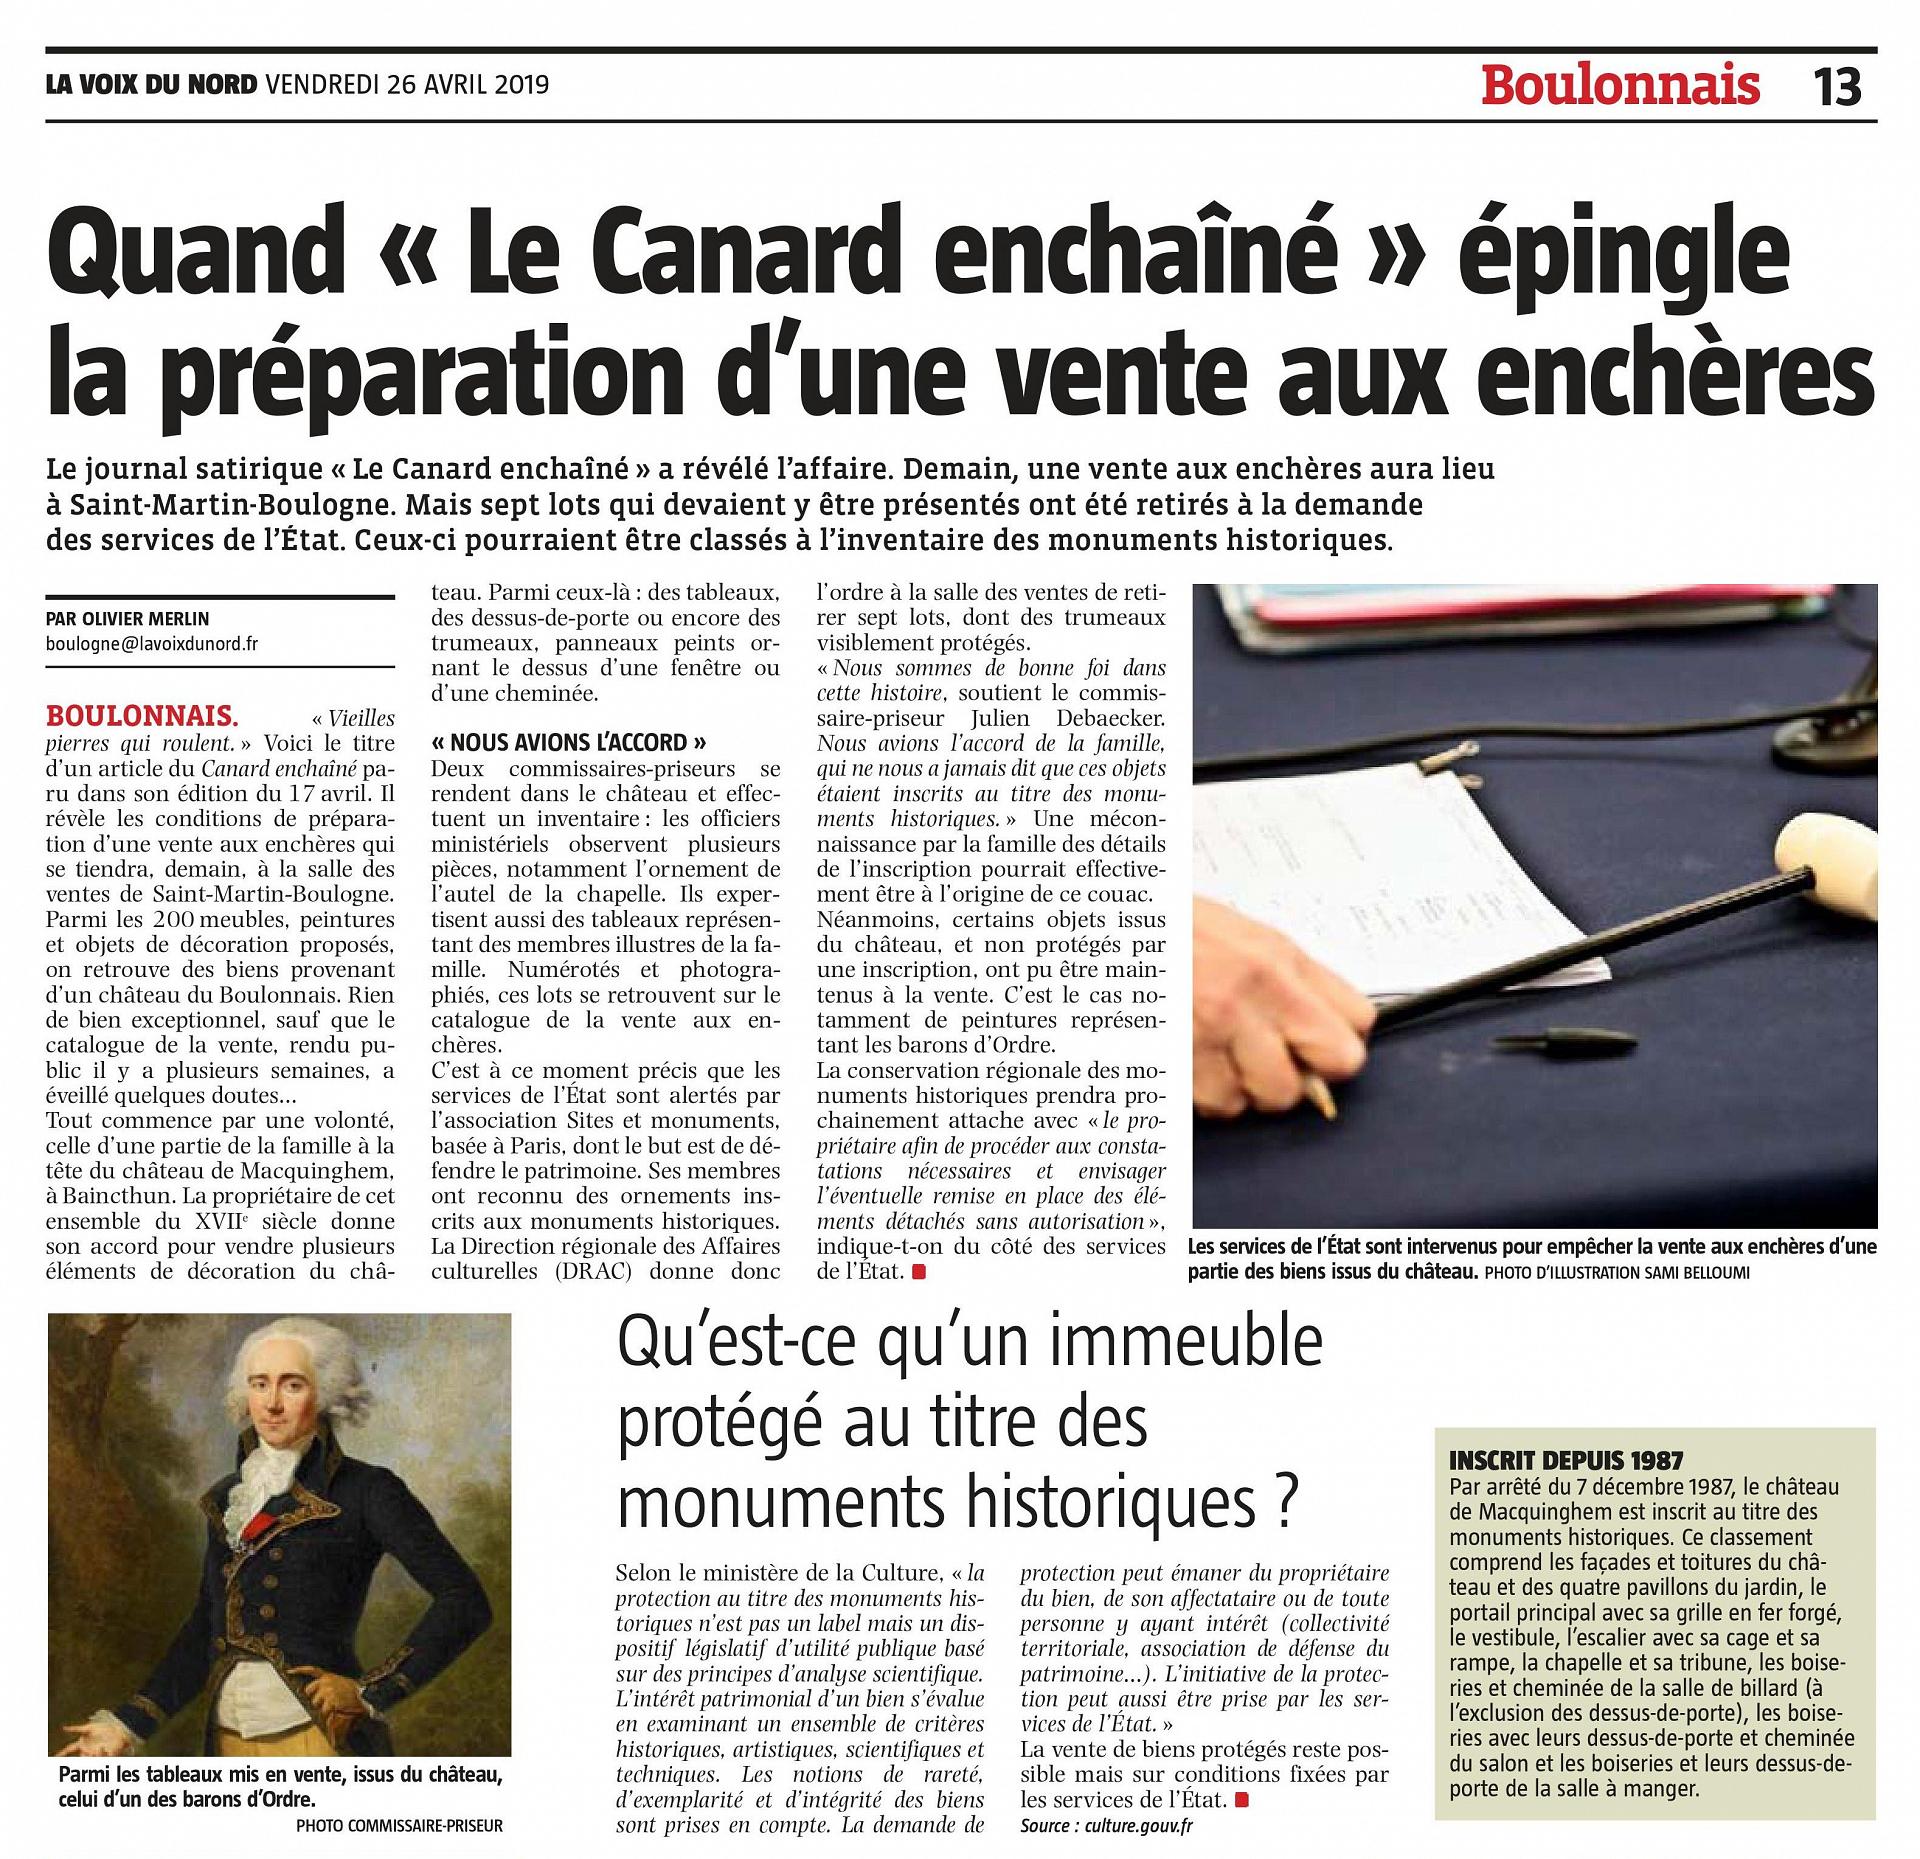 Vente château d'Ordre - La Voix du Nord n°23842 du 26 avril 2019, p. 13